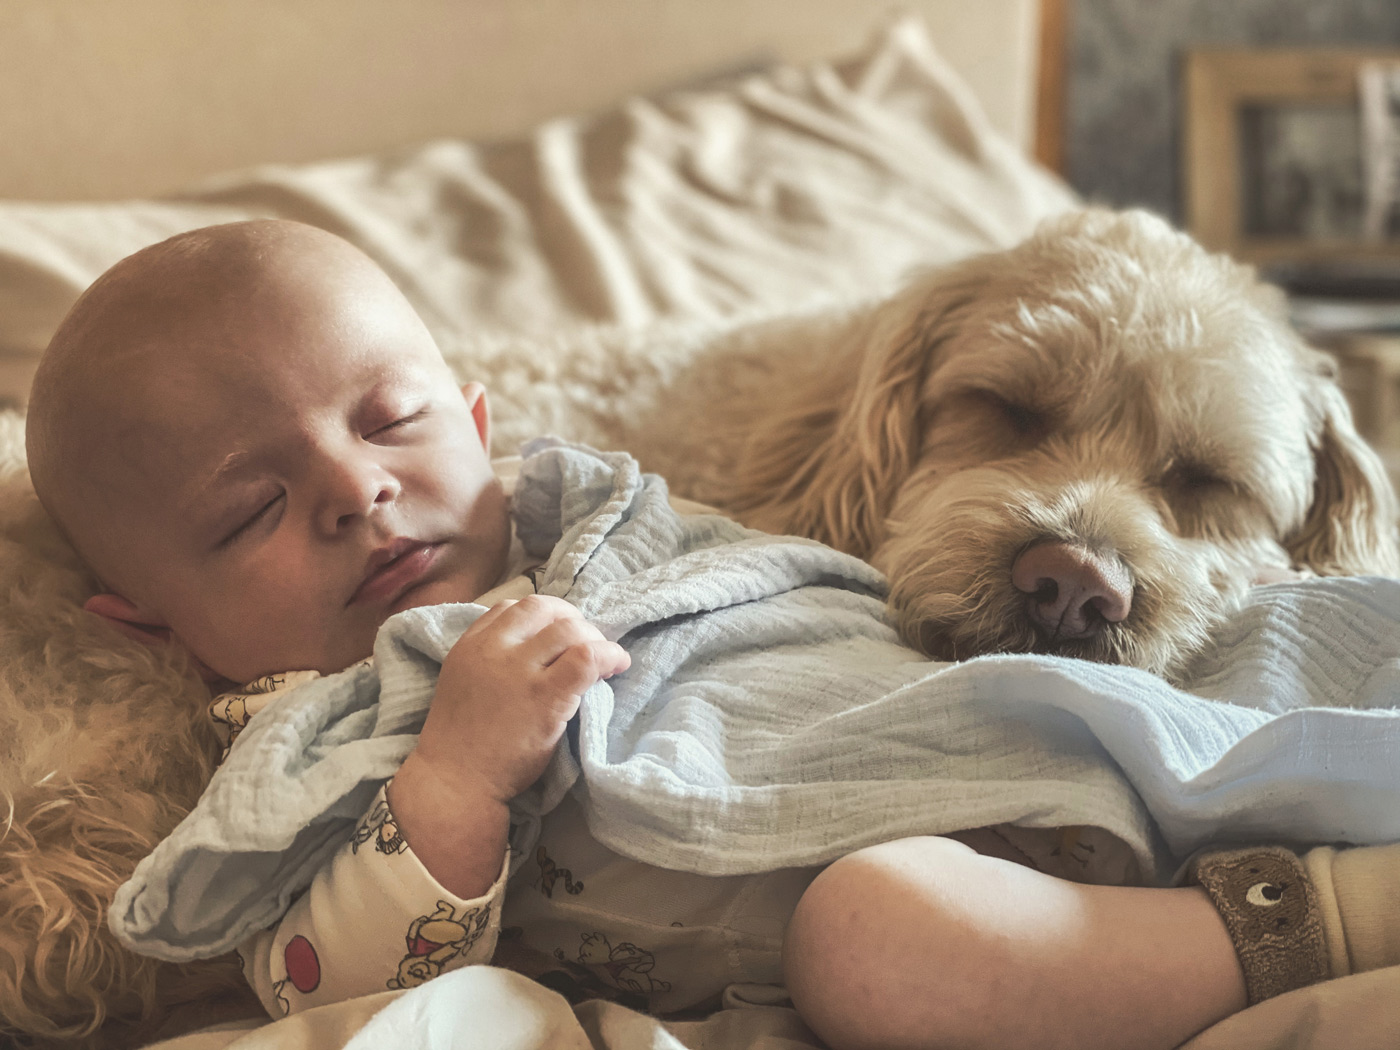 bebé y perro durmiendo placidamente juntos